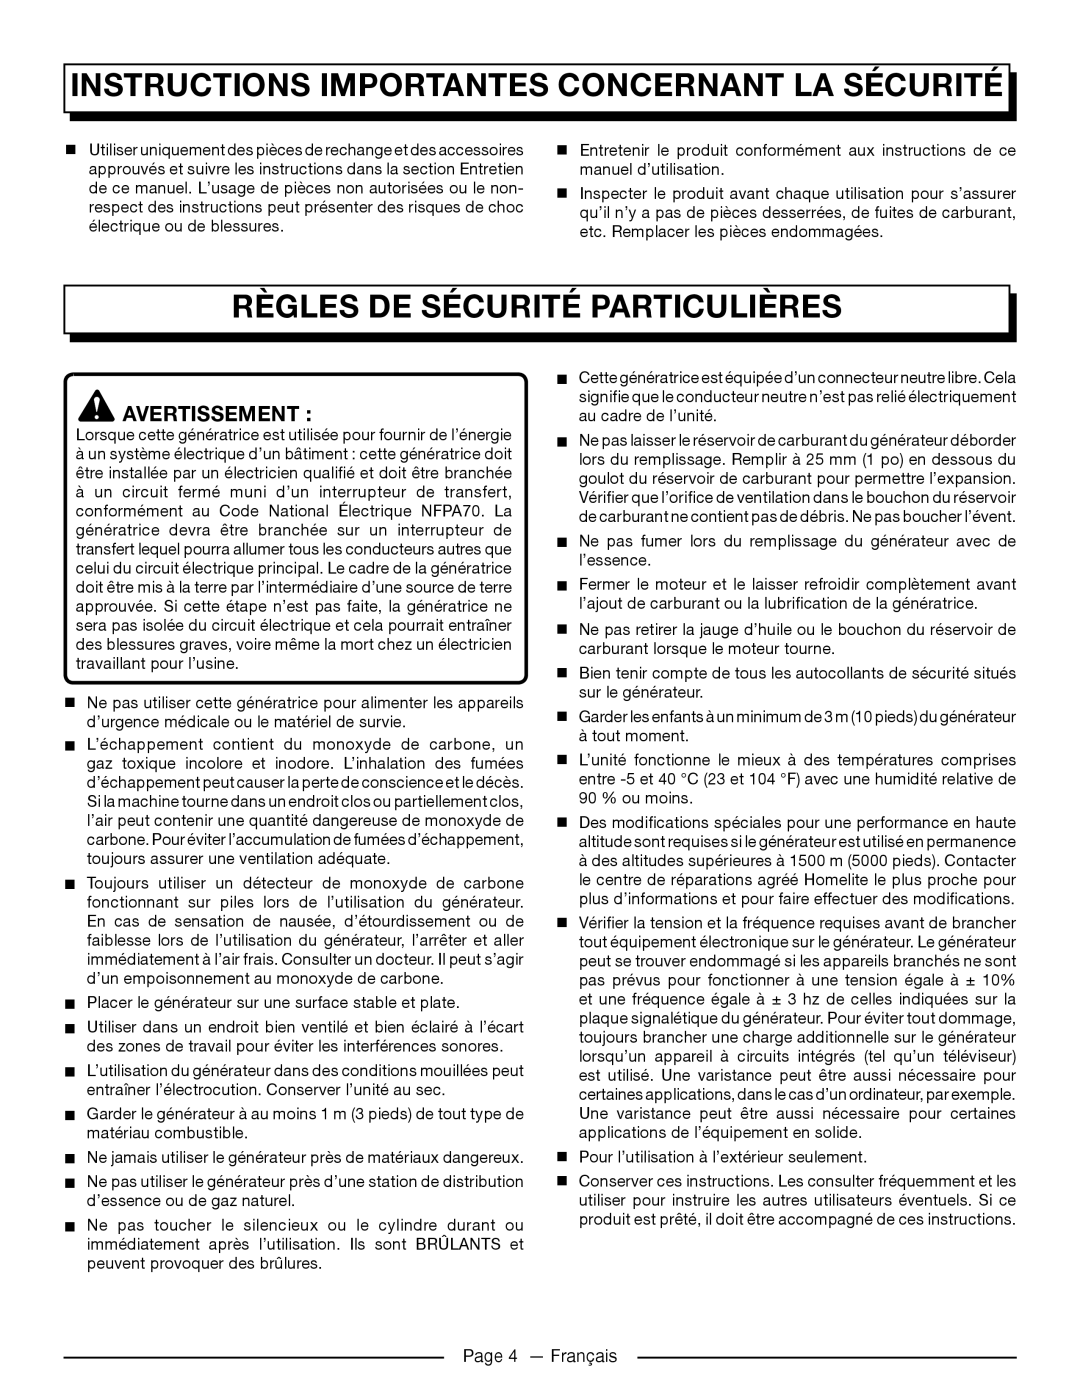 Homelite UT905011 Règles De Sécurité Particulières, Instructions Importantes Concernant La Sécurité, Avertissement 